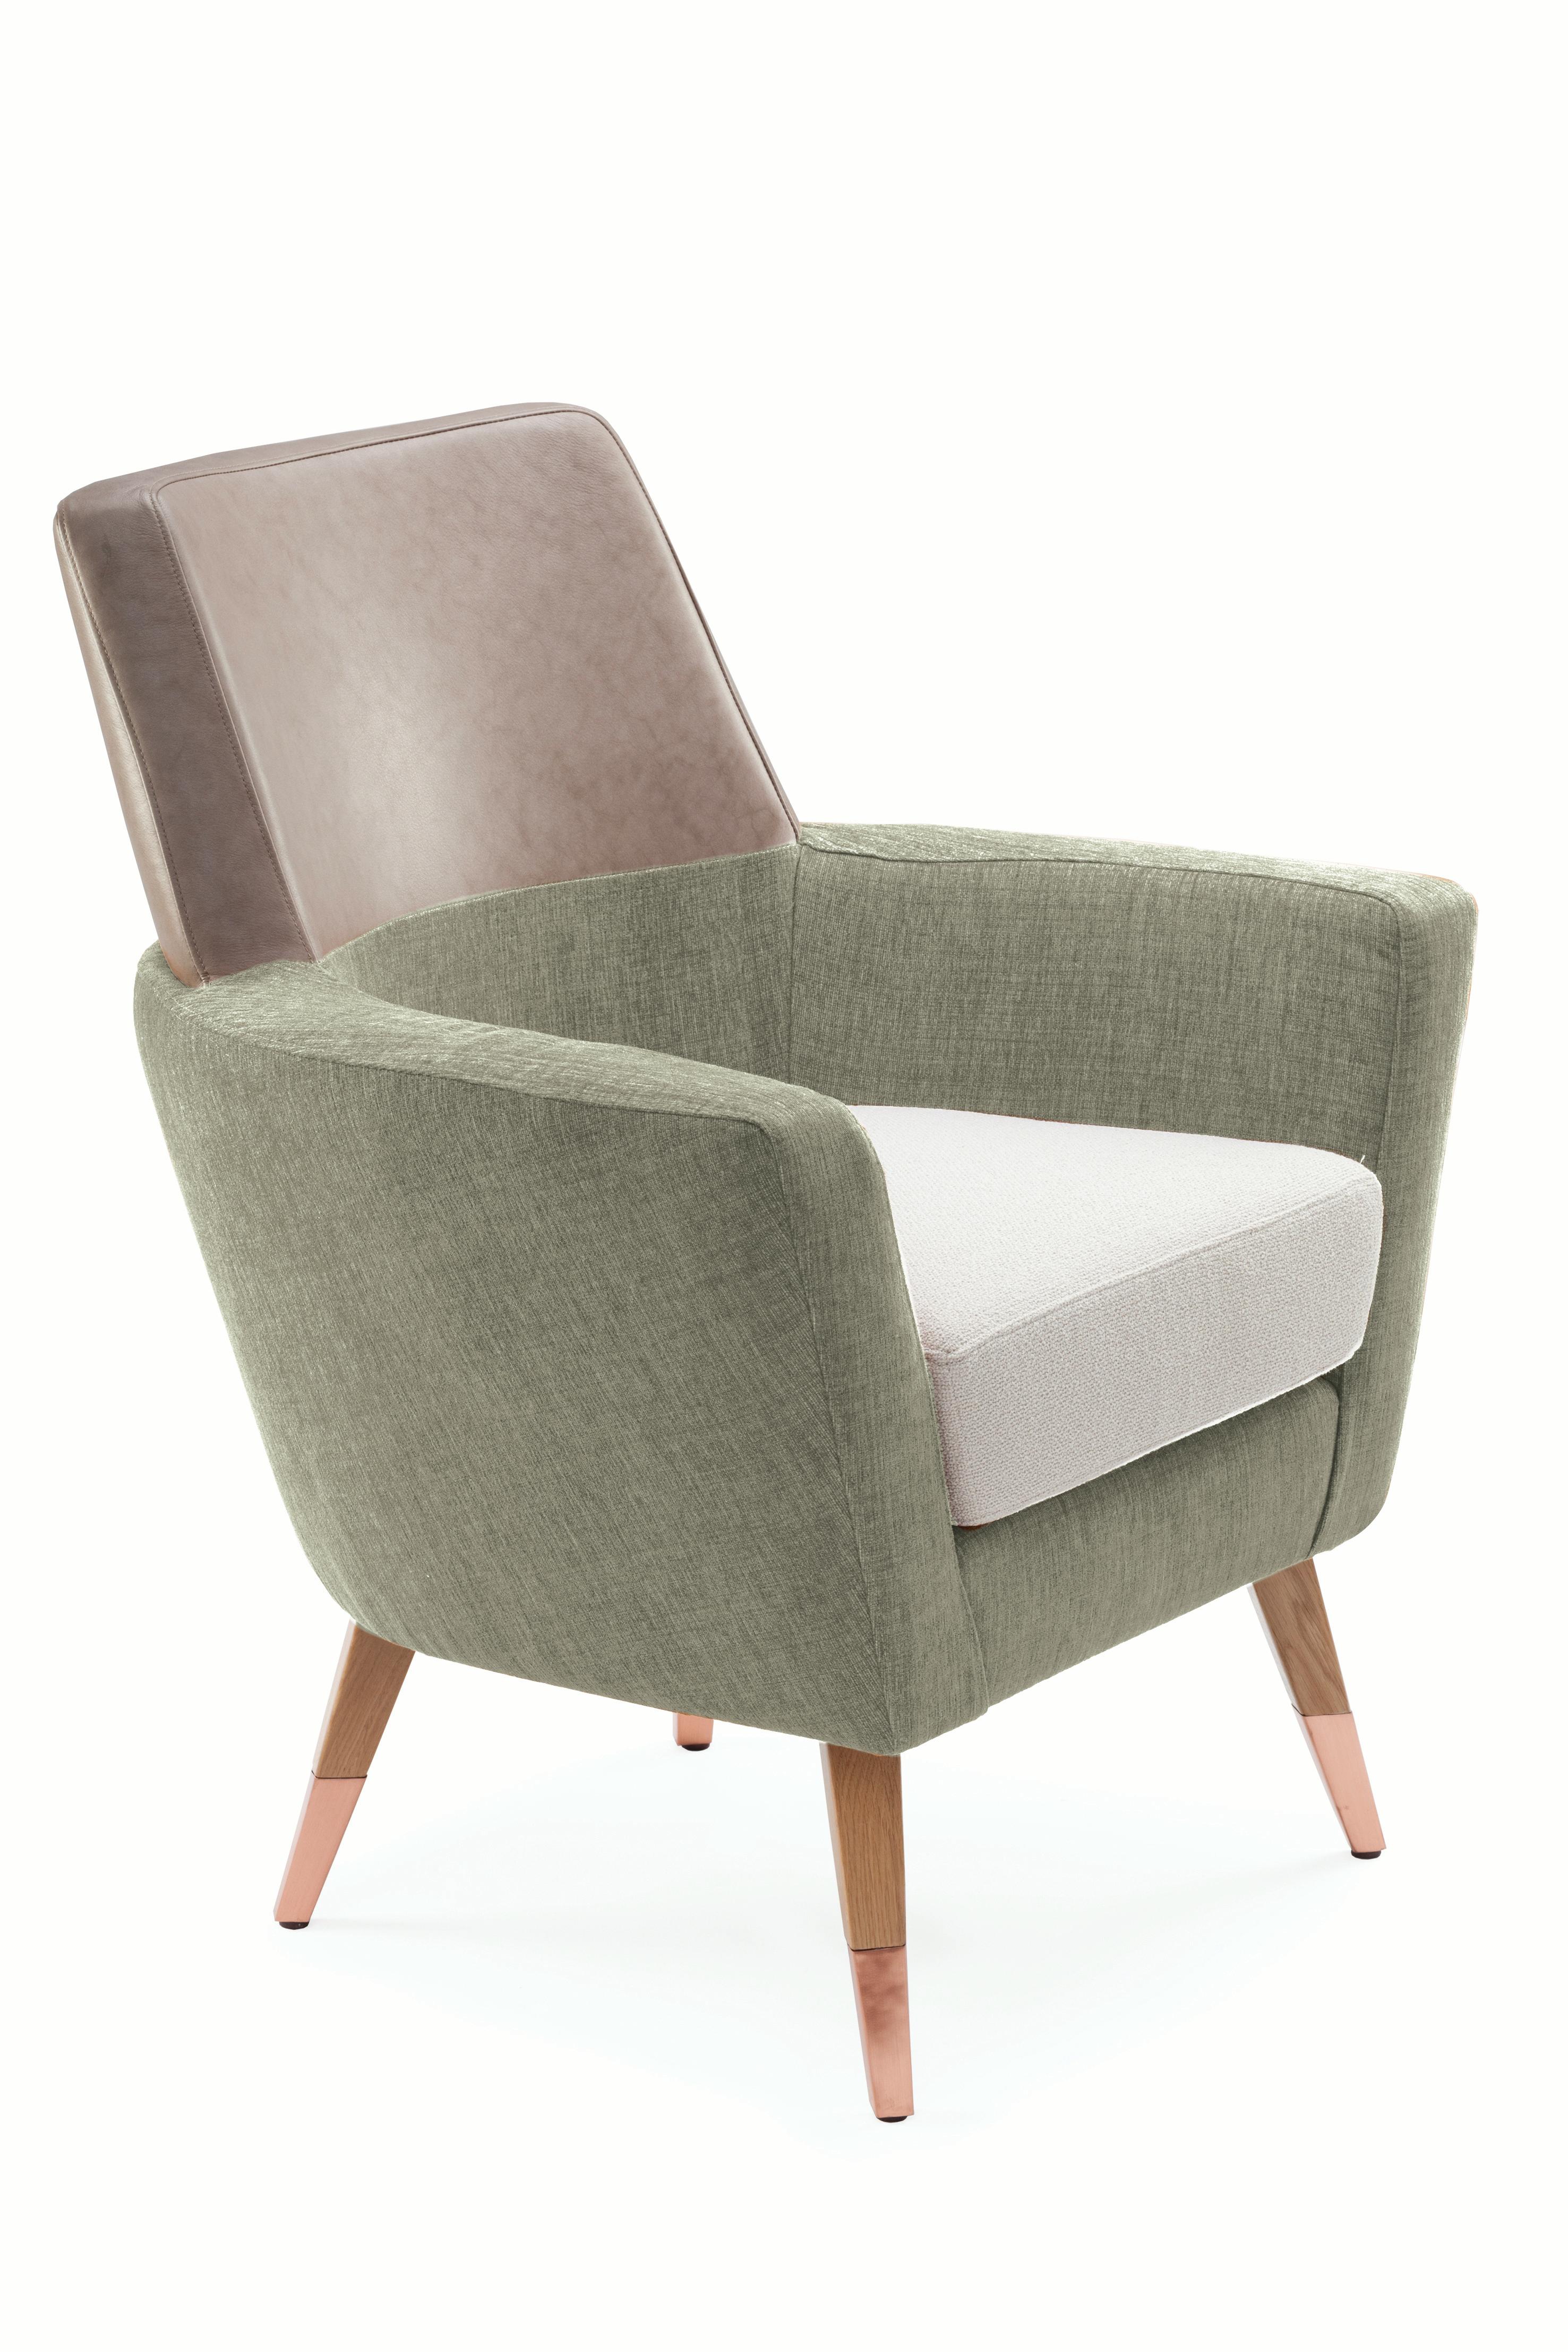 Mid-Century Modern Doble Armchair For Sale